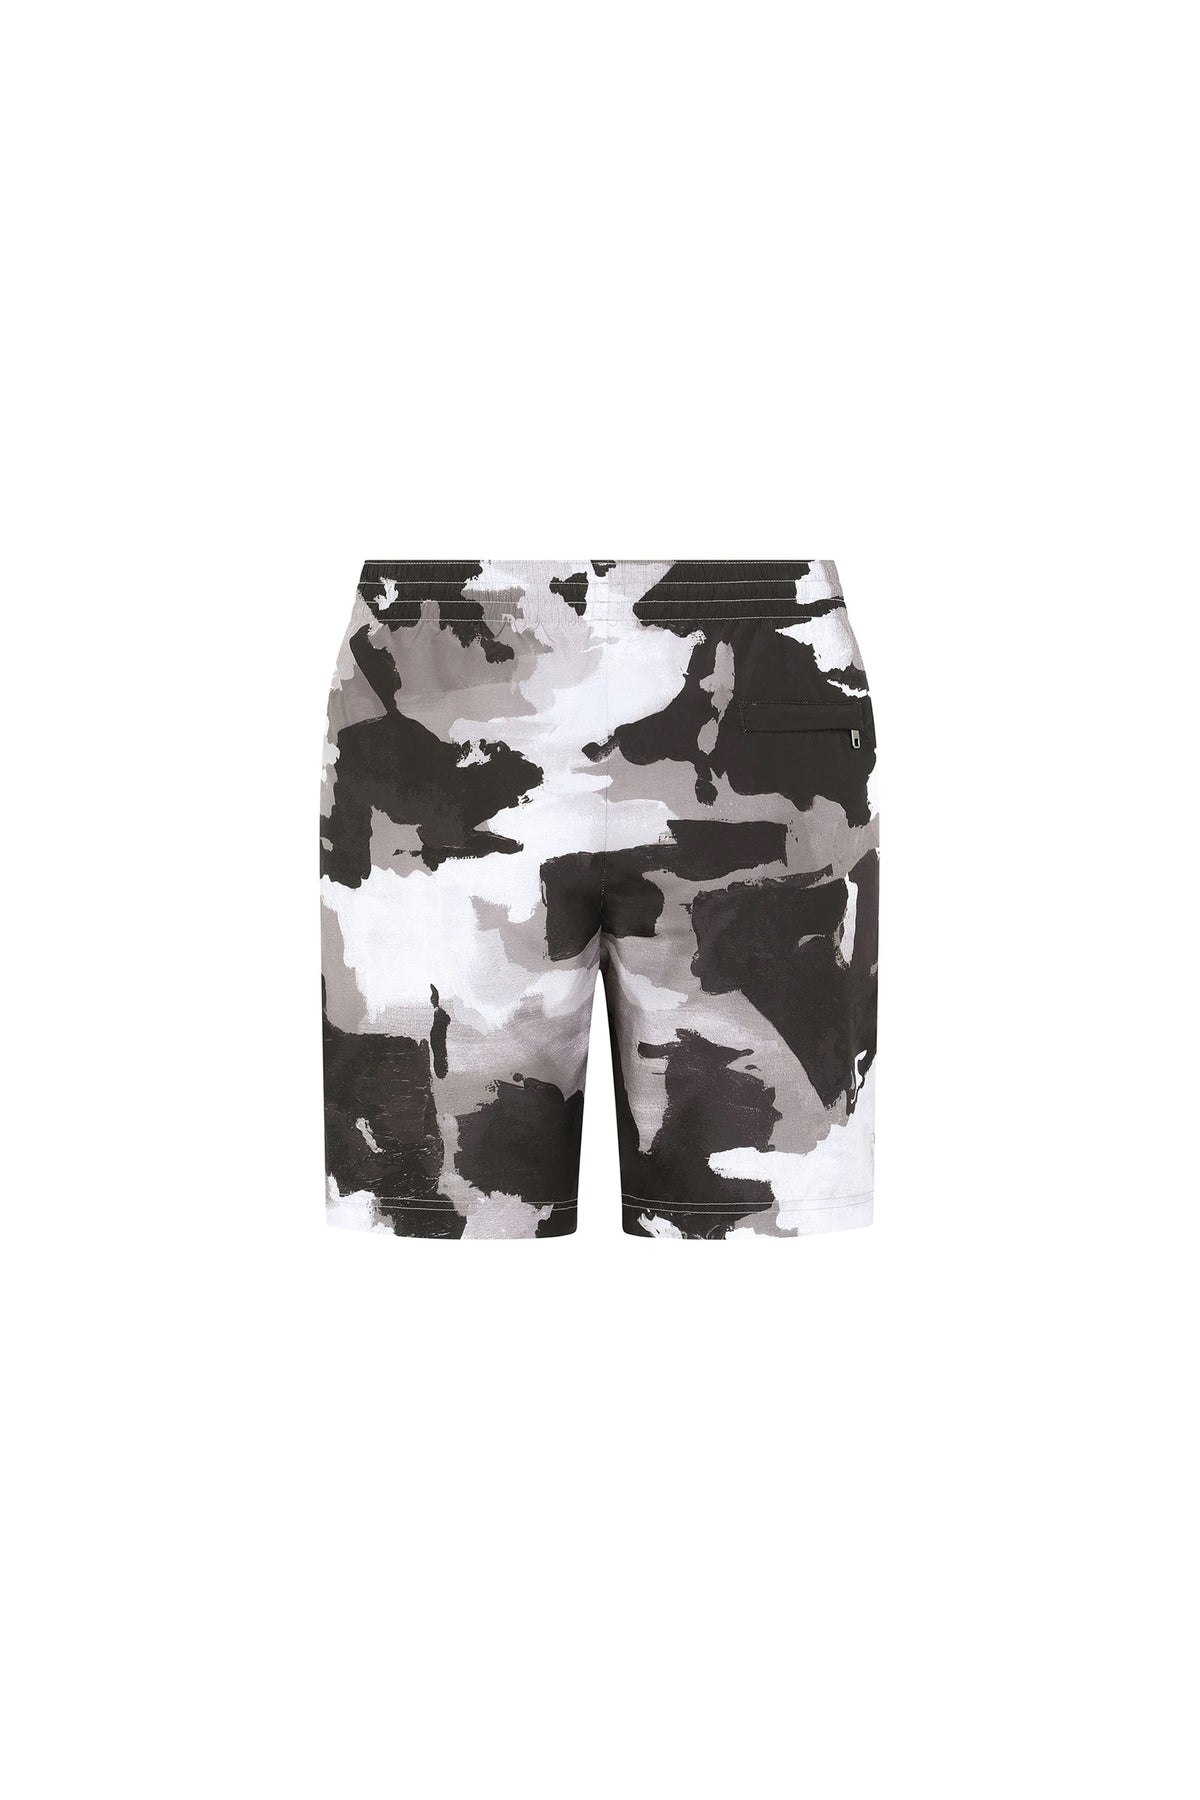 Dolce & Gabbana Camouflage Swimwear Shorts